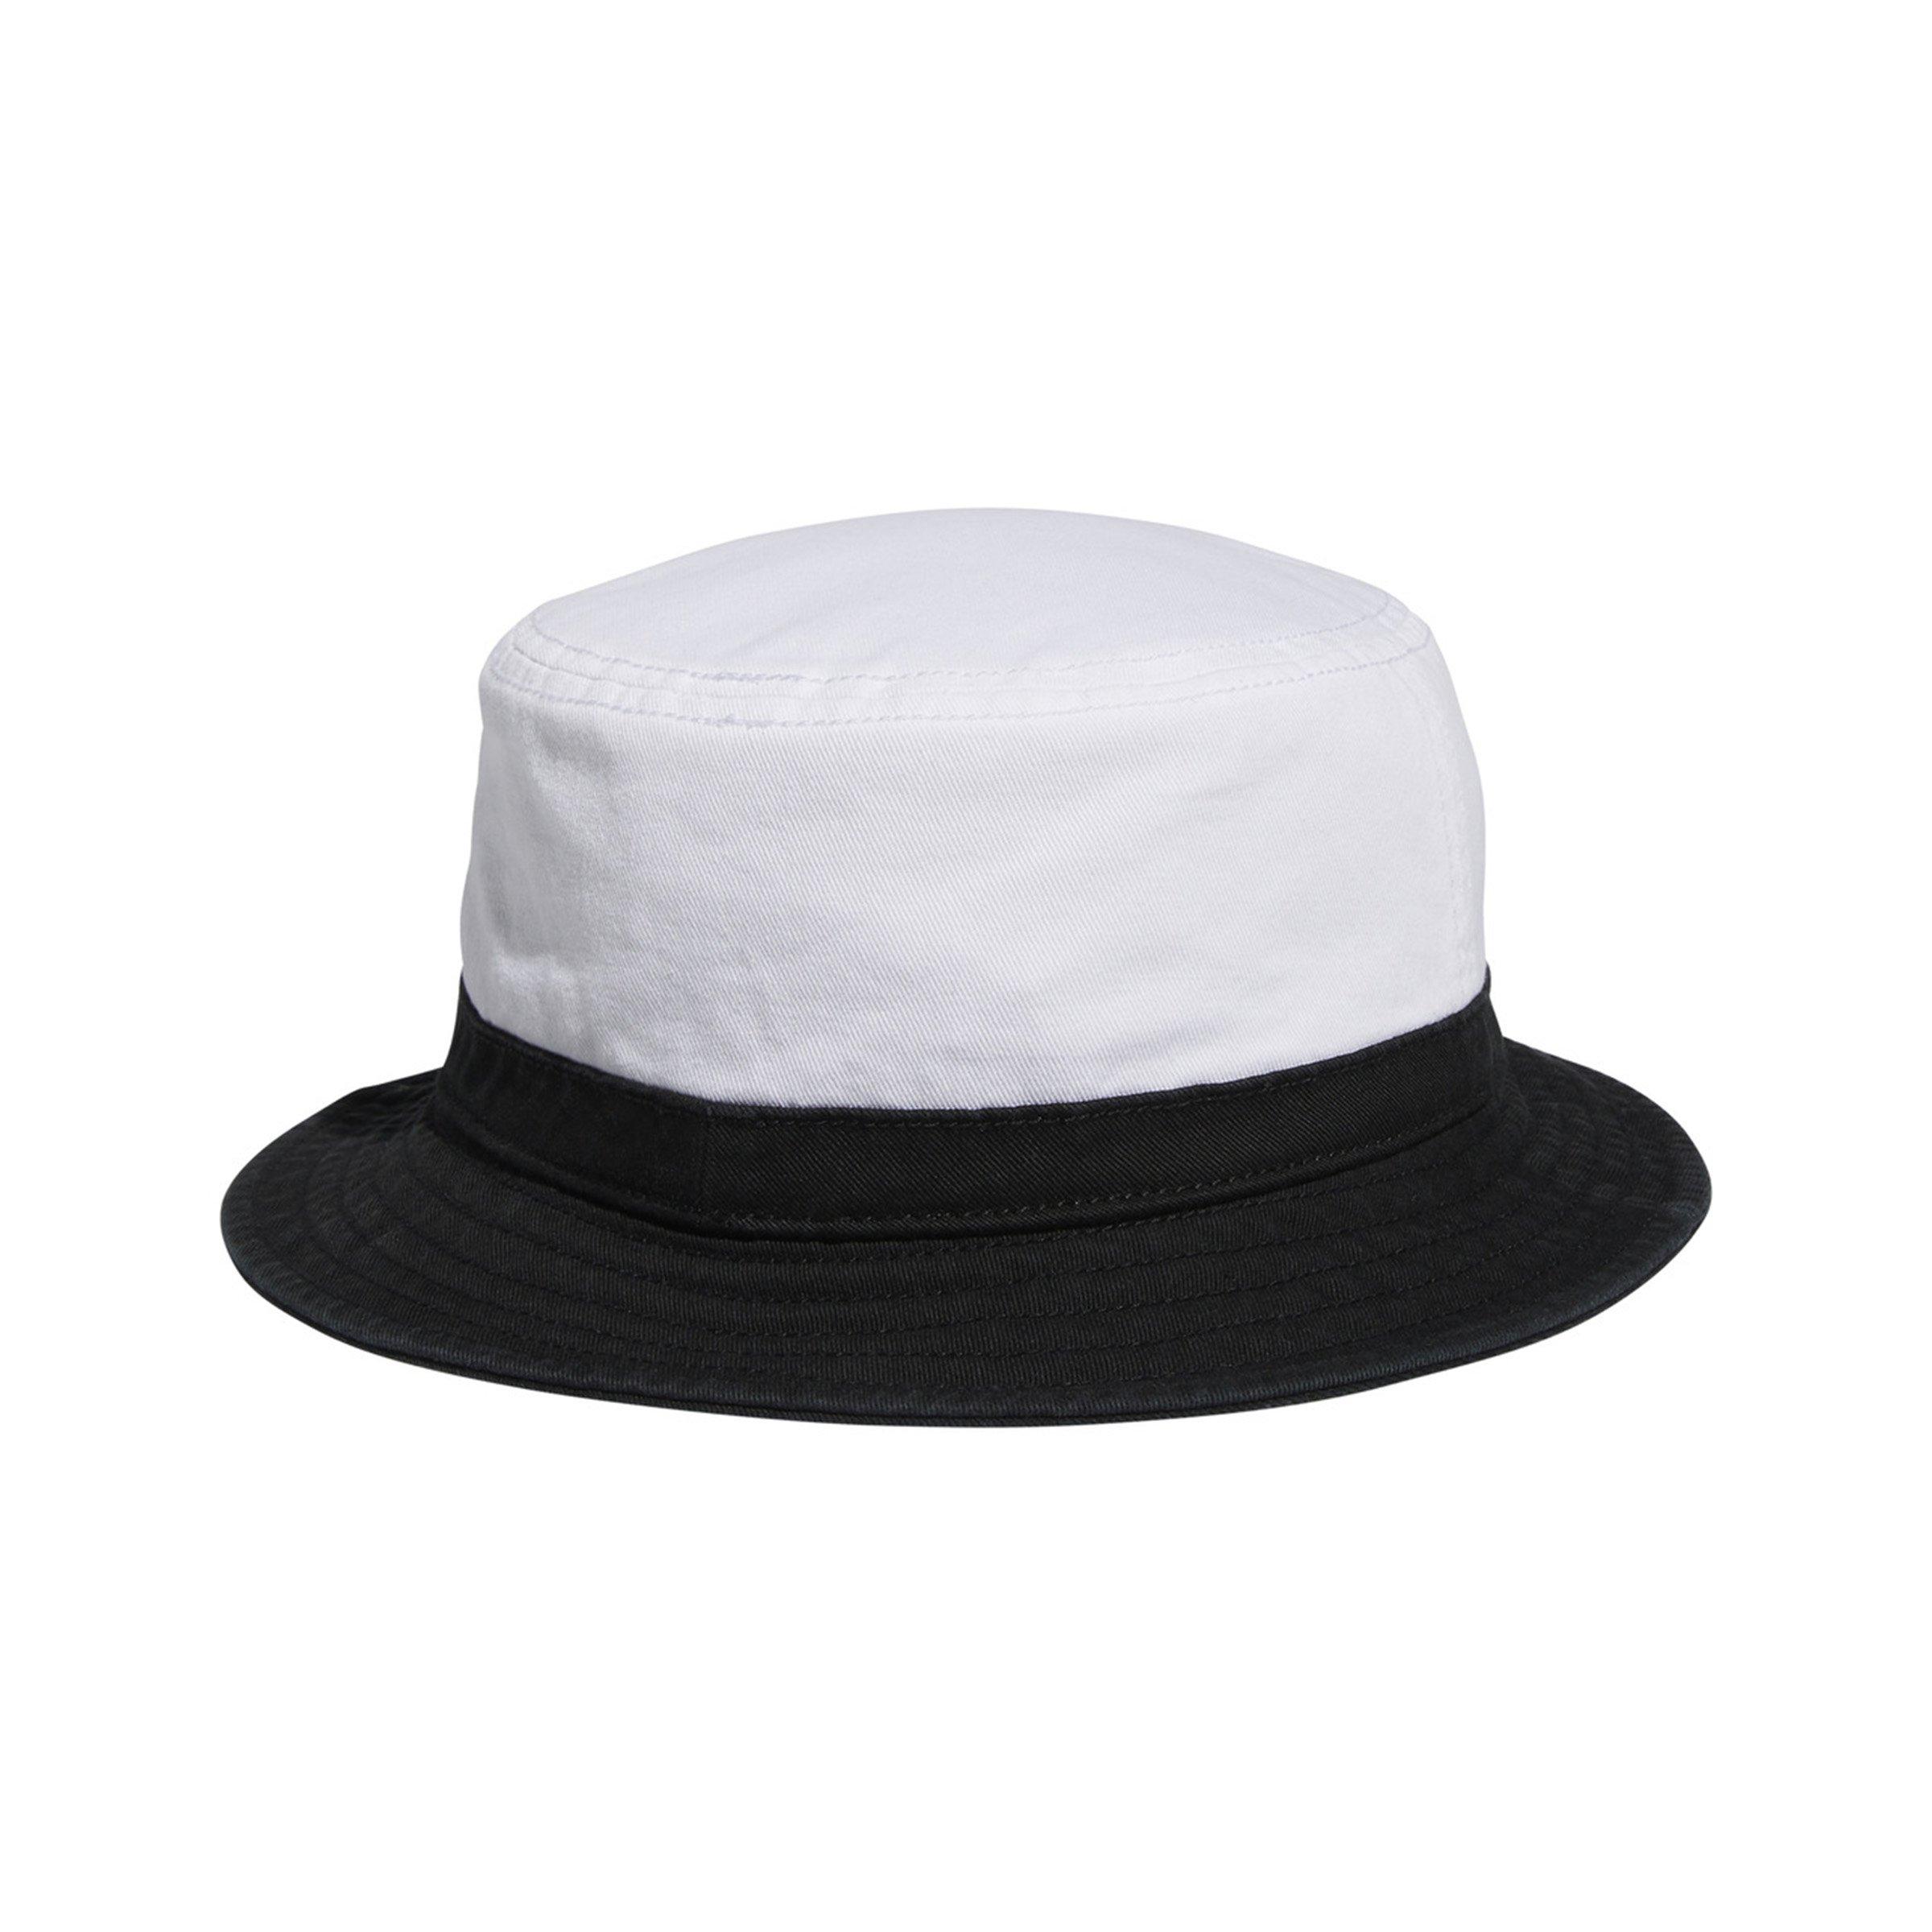 adidas Originals Men's Washed Bucket Hat - White/Black